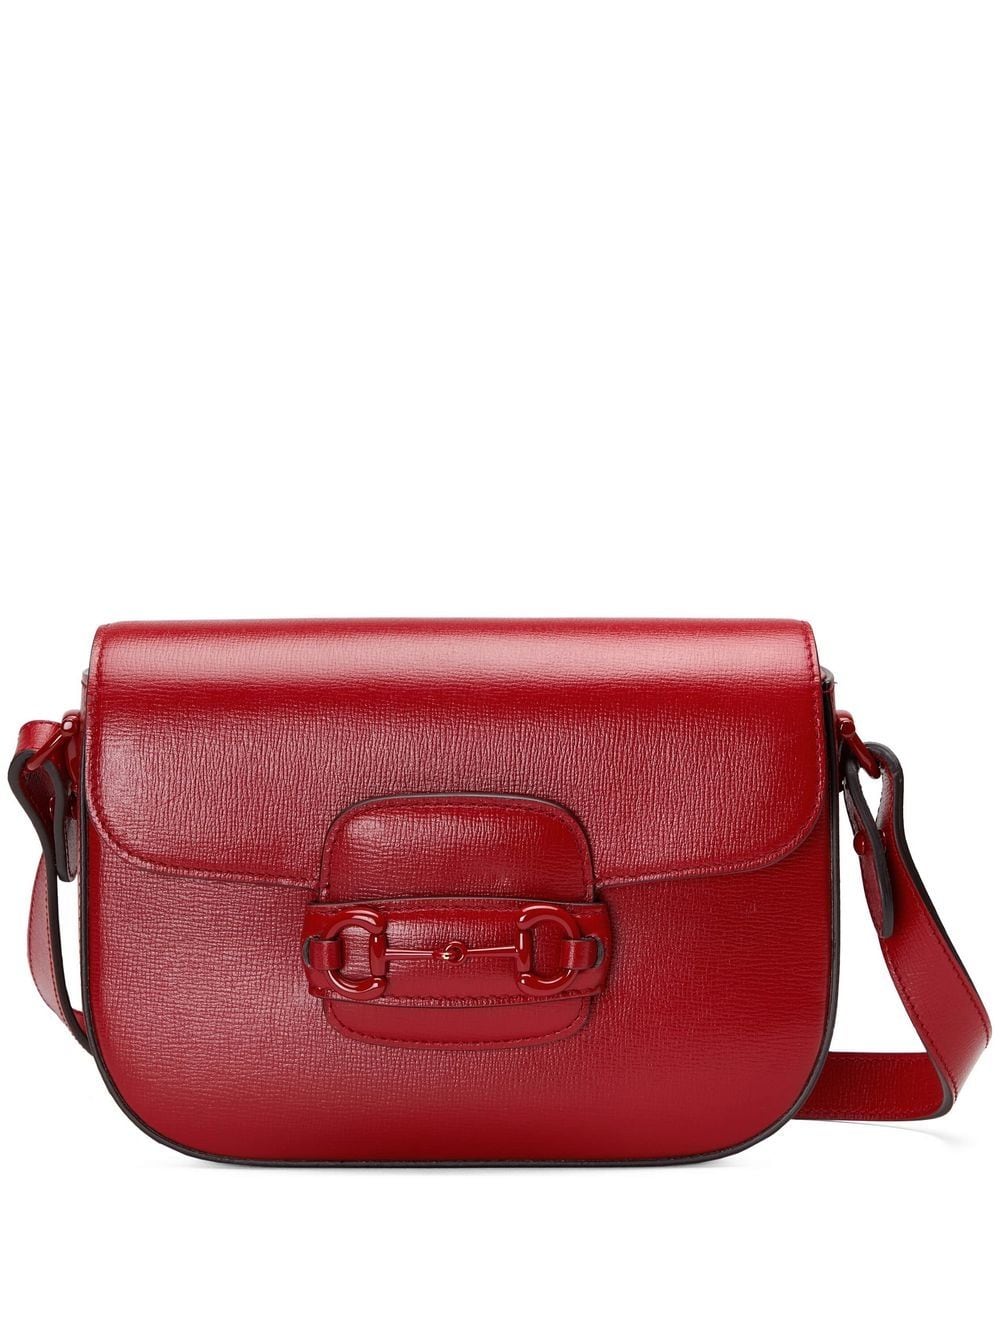 Gucci Horsebit 1955 small shoulder bag - Red von Gucci